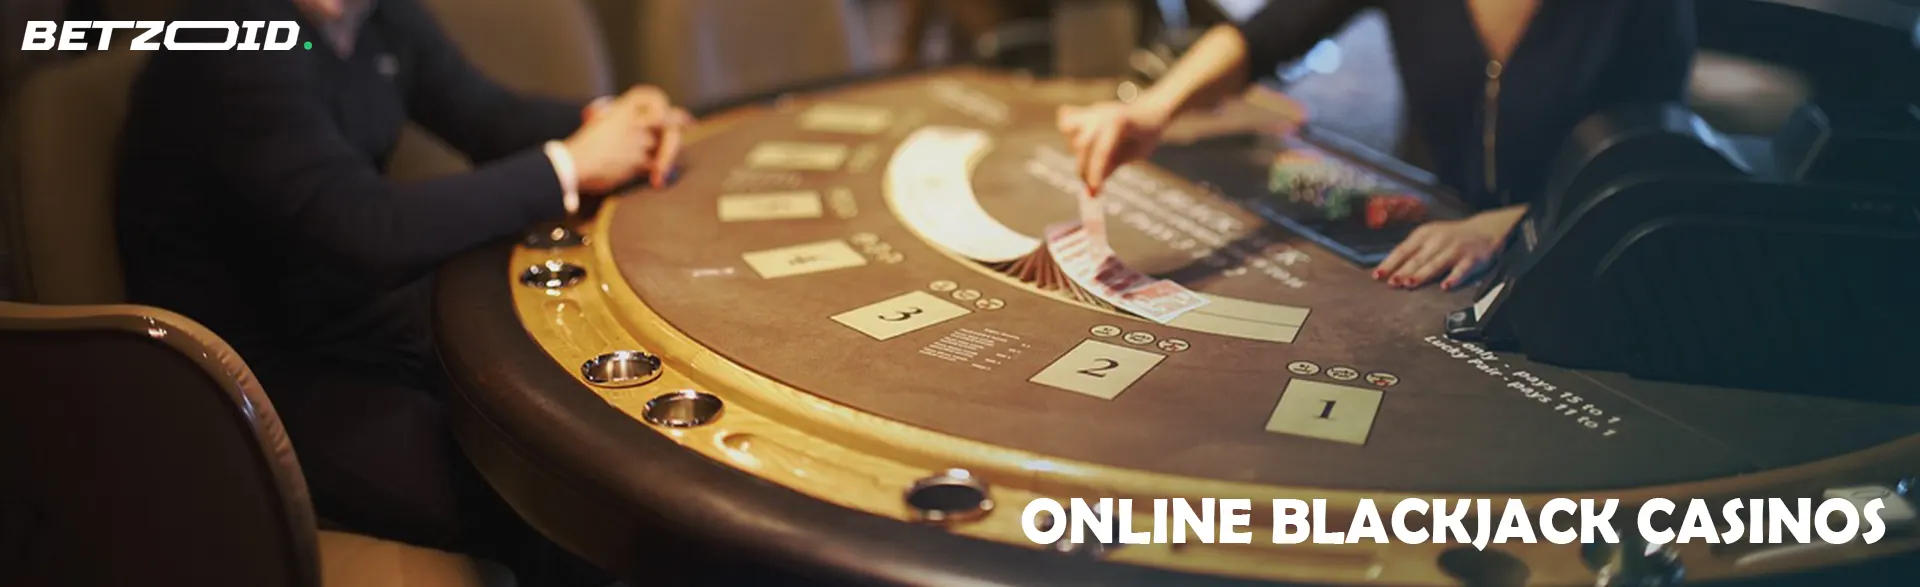 Online Blackjack Casinos in Kenya.